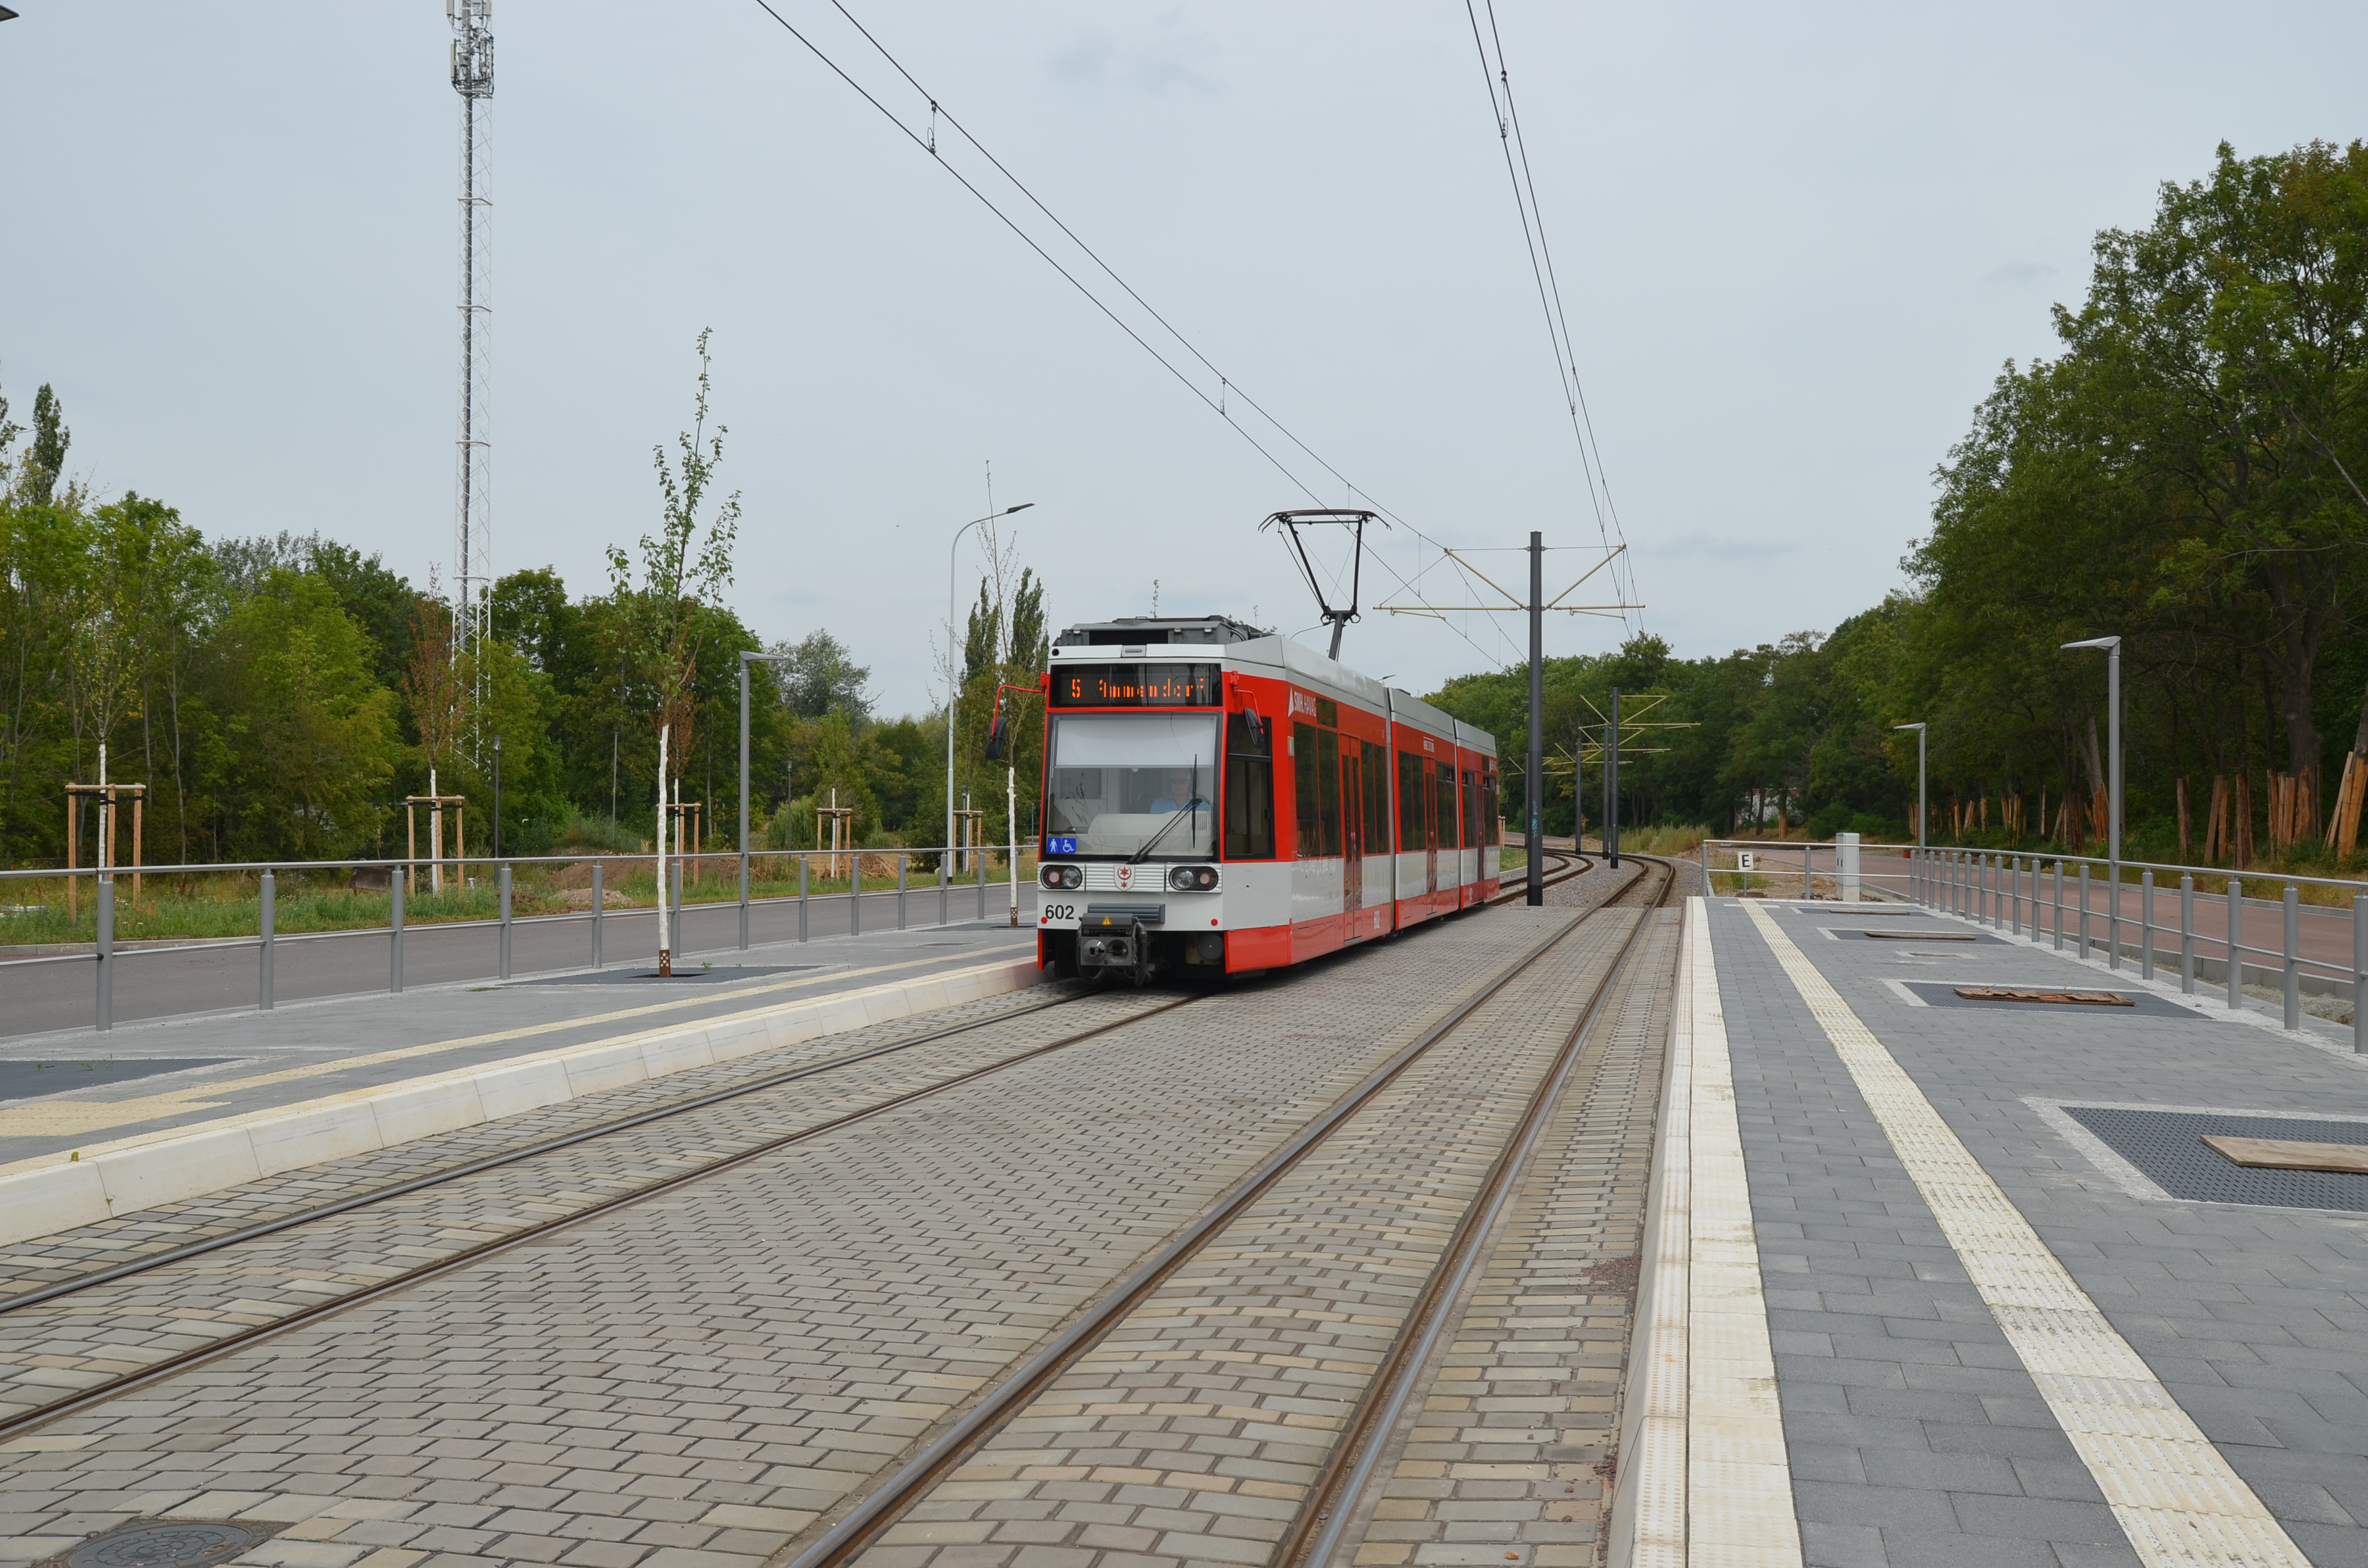 Das Bild zeigt eine vorbeifahrende rote Straßenbahn, aufgenommen wurde das Bild vom Bahnsteig aus.